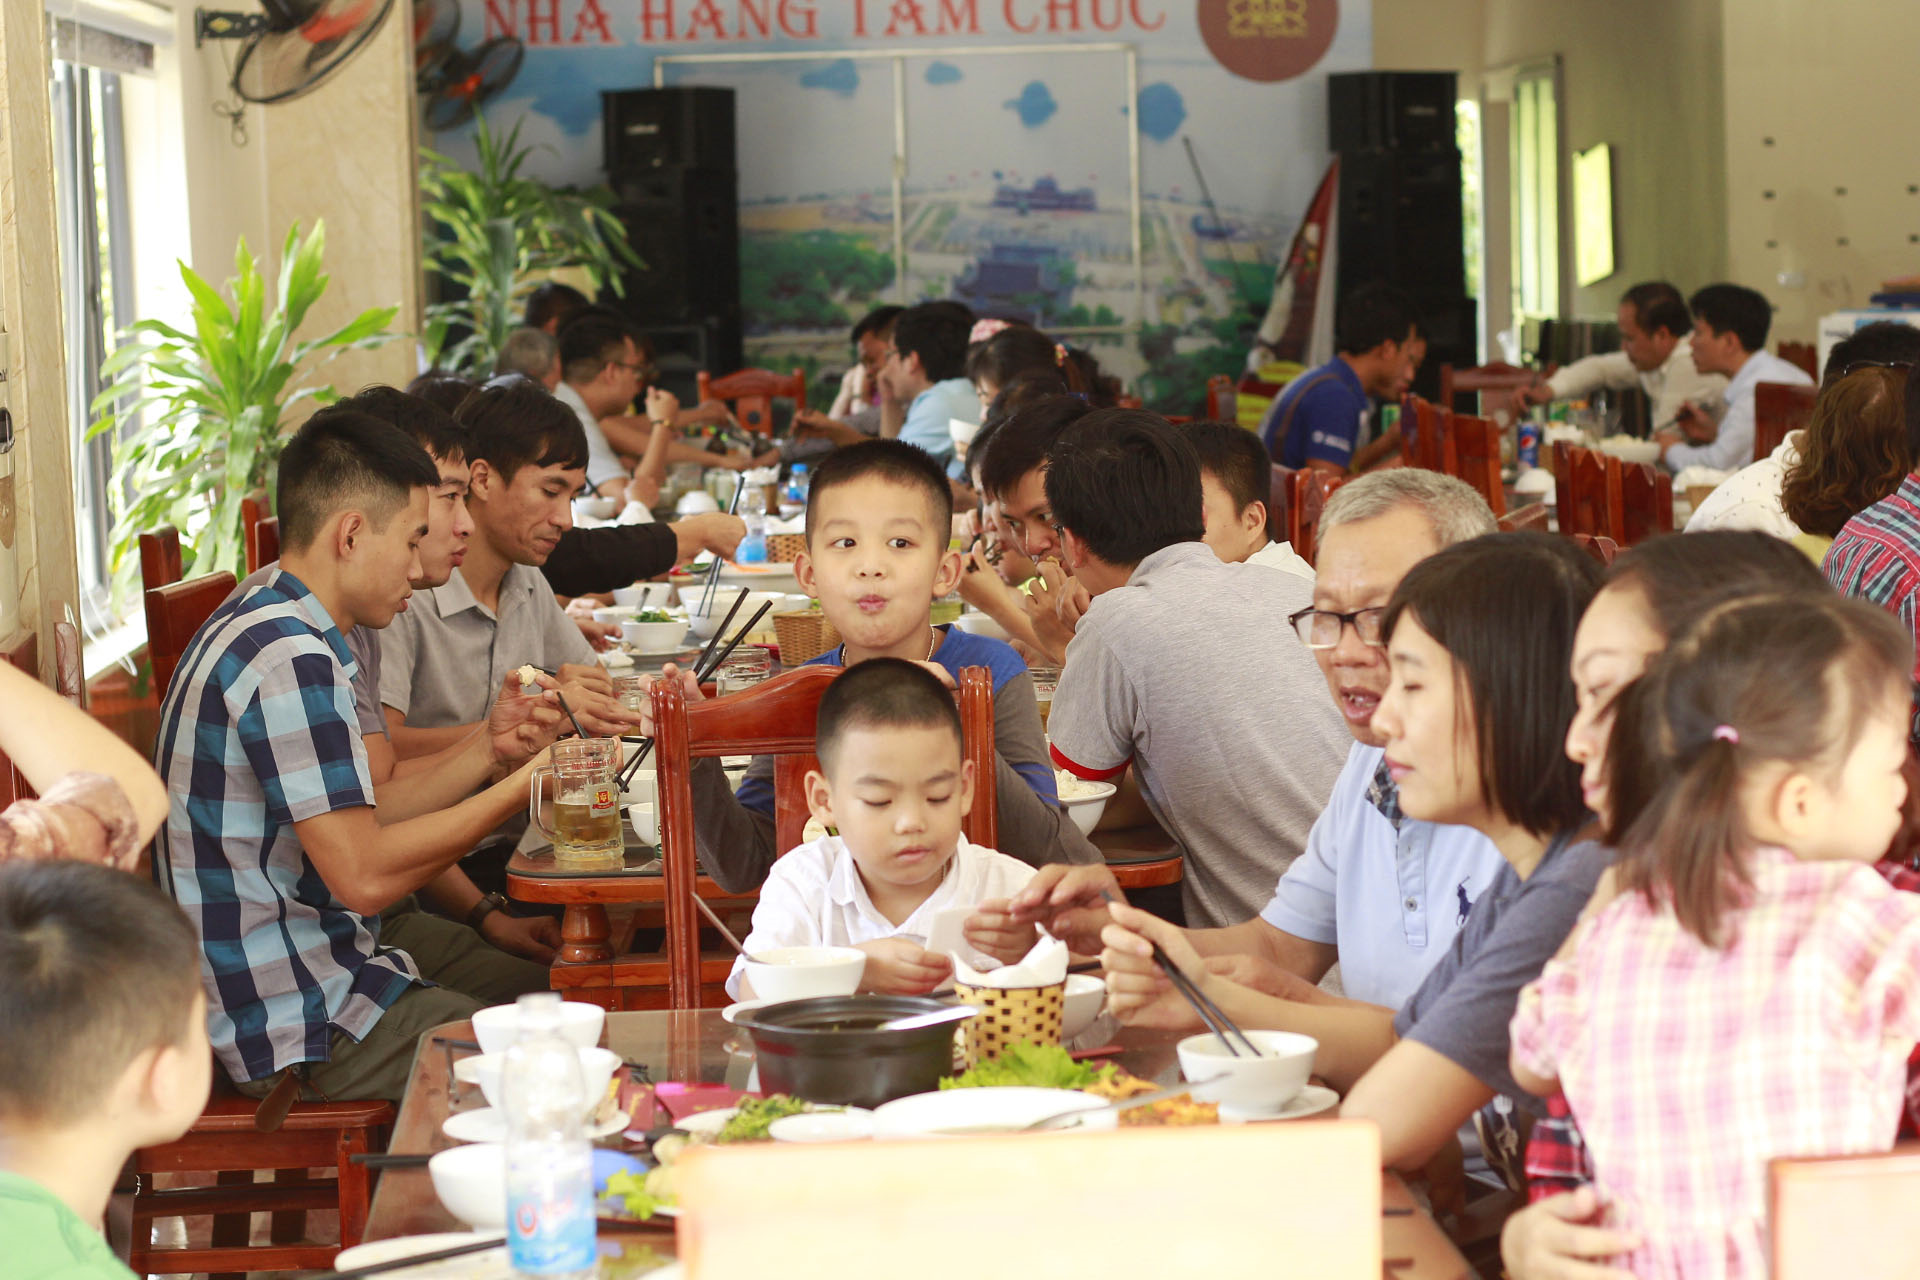 NHÀ HÀNG TAM CHÚC – Dịch vụ nhà hàng, ẩm thực TOP 1 chùa Tam Chúc 